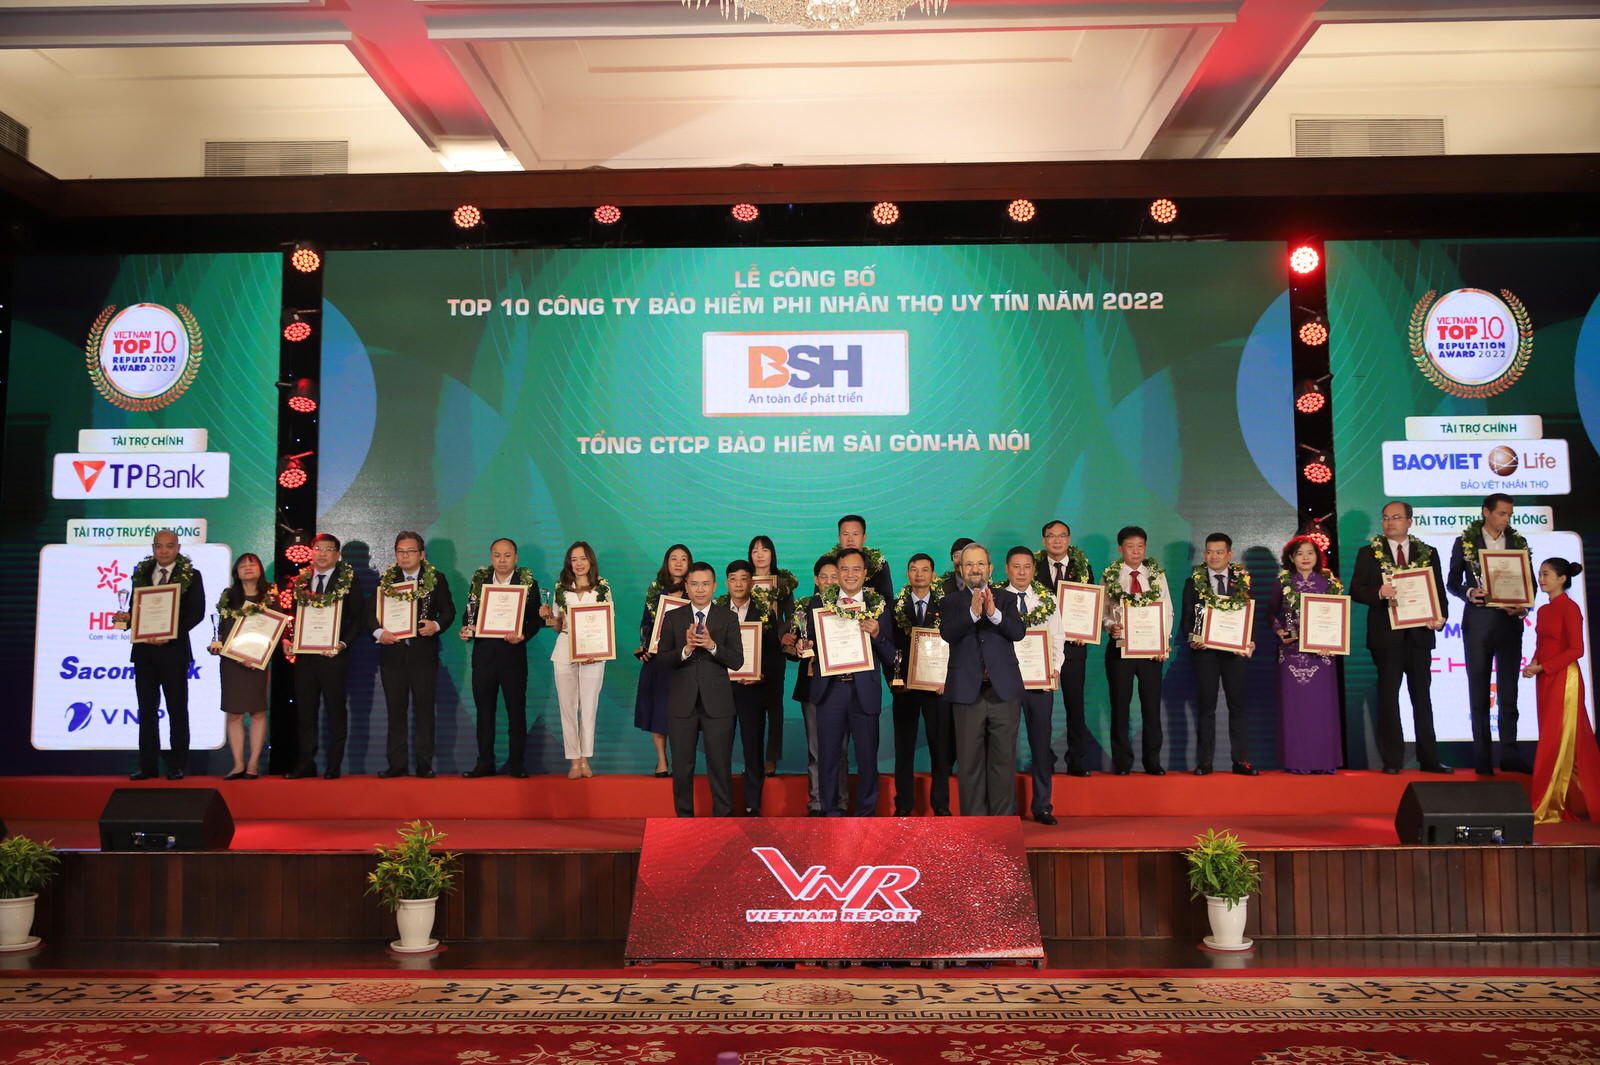 Tổng Công ty CP Bảo Hiểm Sài Gòn - Hà Nội (BSH) đạt TOP 10 Công ty Bảo Hiểm Phi Nhân Thọ uy tín năm 2022